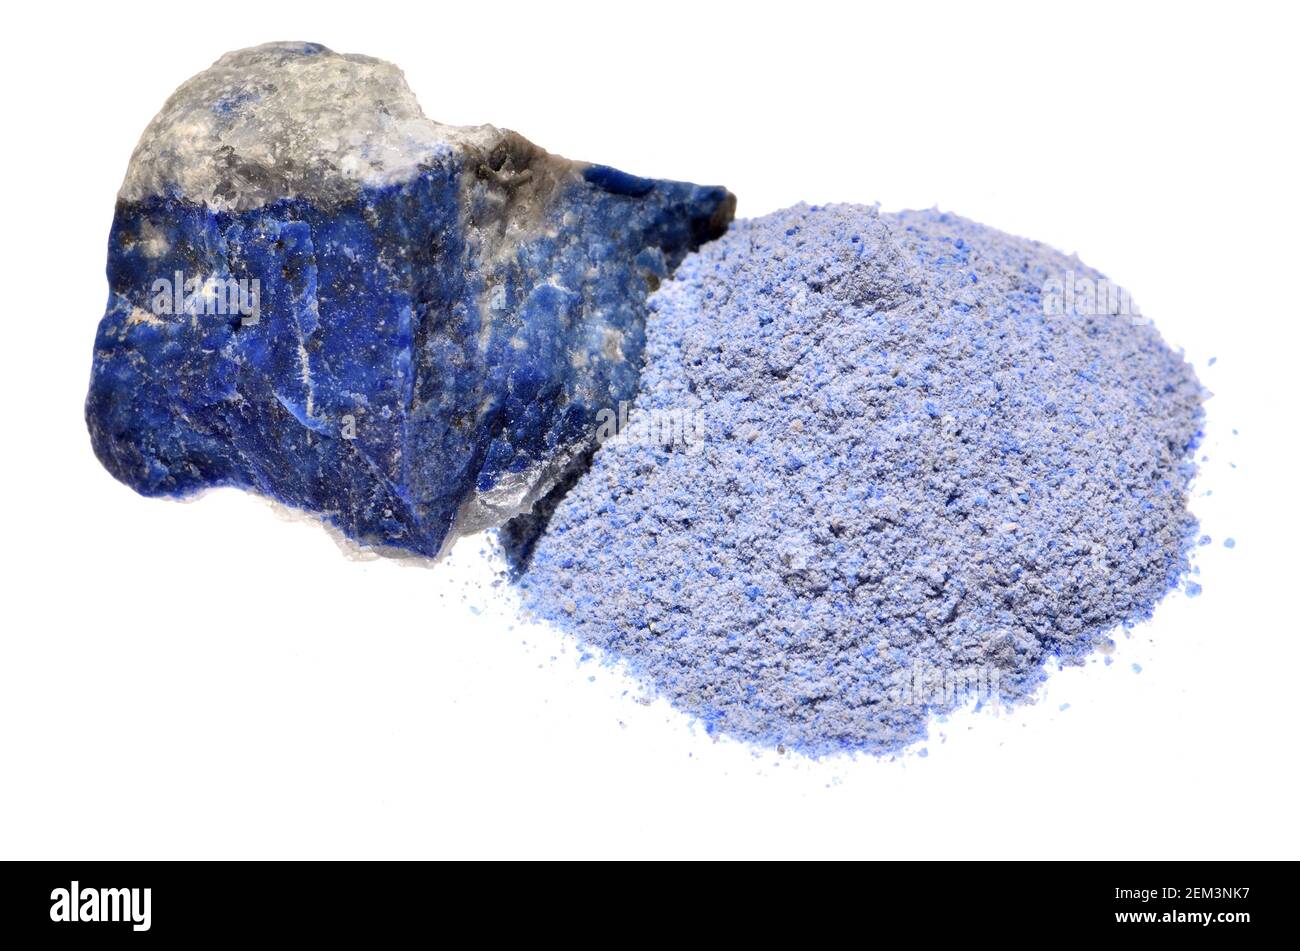 Lapis Lazuli, moulu en poudre pour créer le pigment Ultramarine Photo Stock  - Alamy